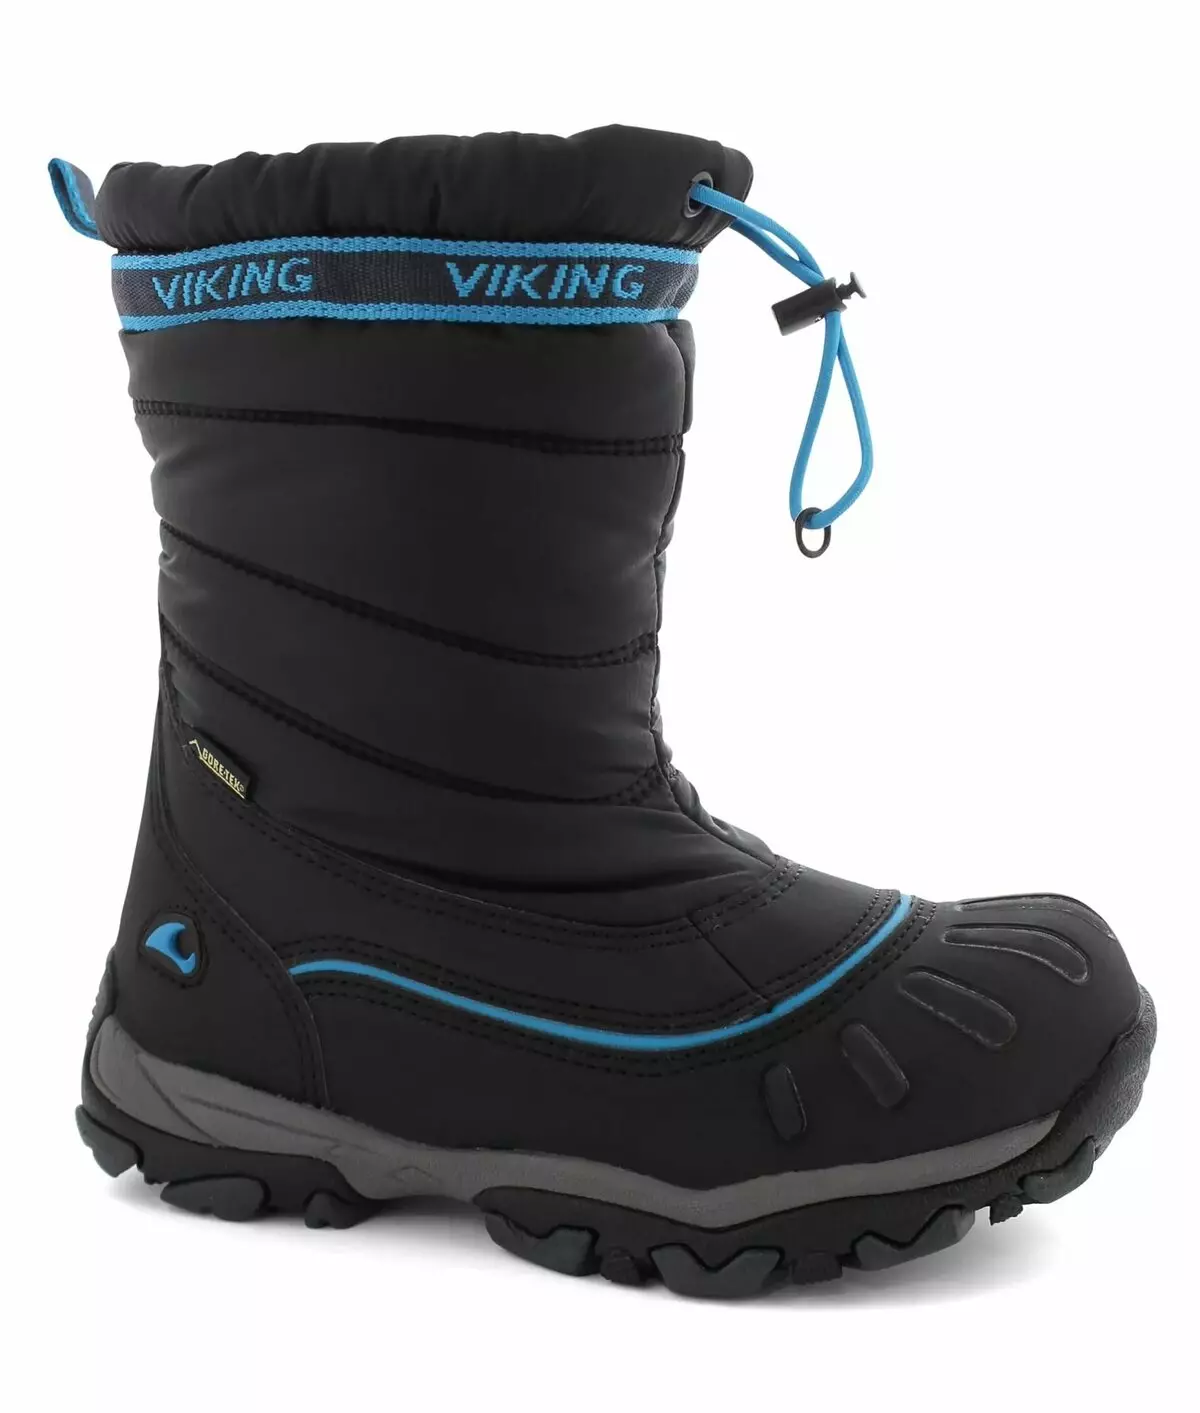 Wikigi Boots (73 foto): Modelli in poliuretano per bambini e donne invernali, maglia dimensionale e recensioni di viking 2258_12